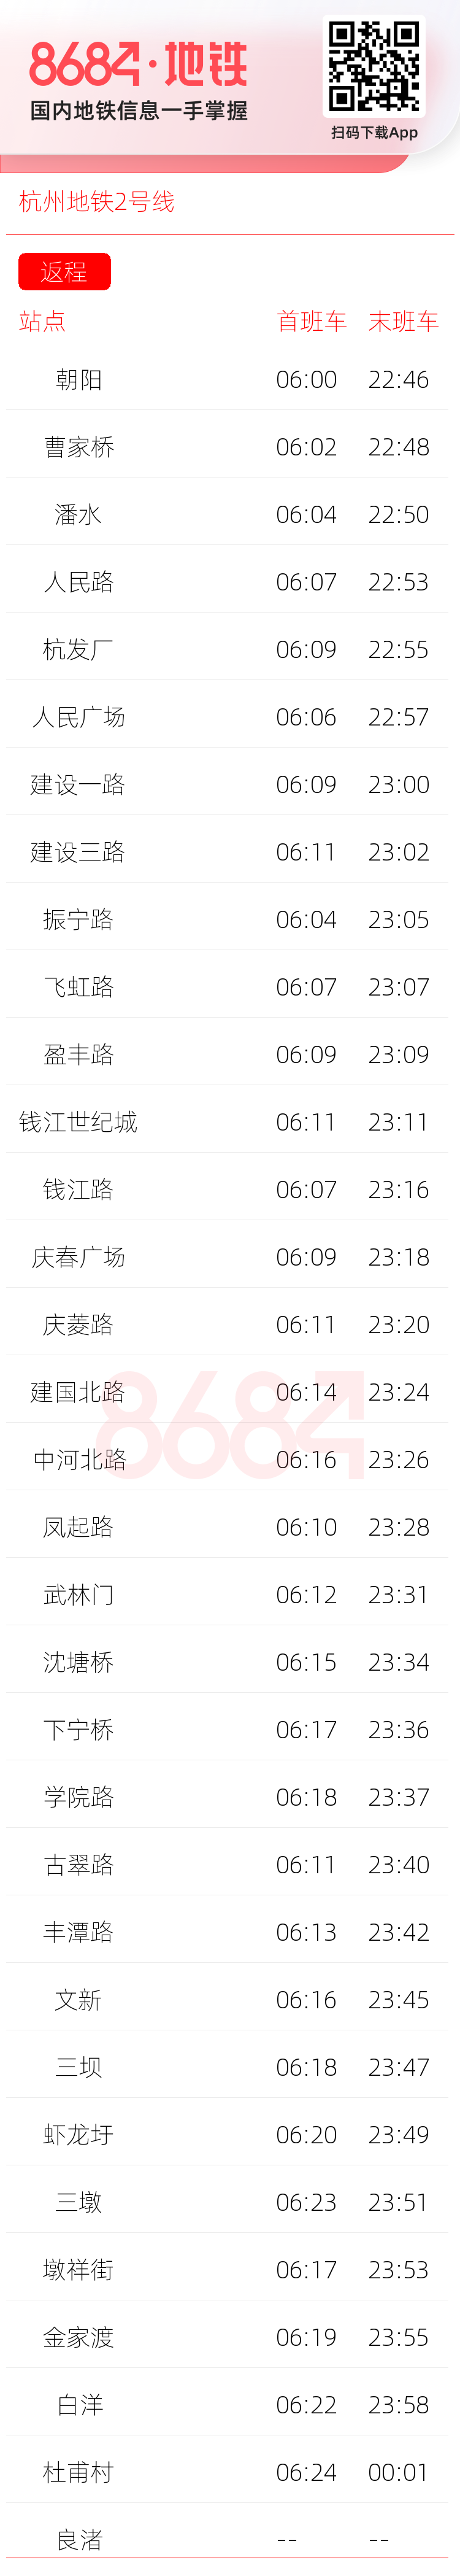 杭州地铁2号线运营时间表